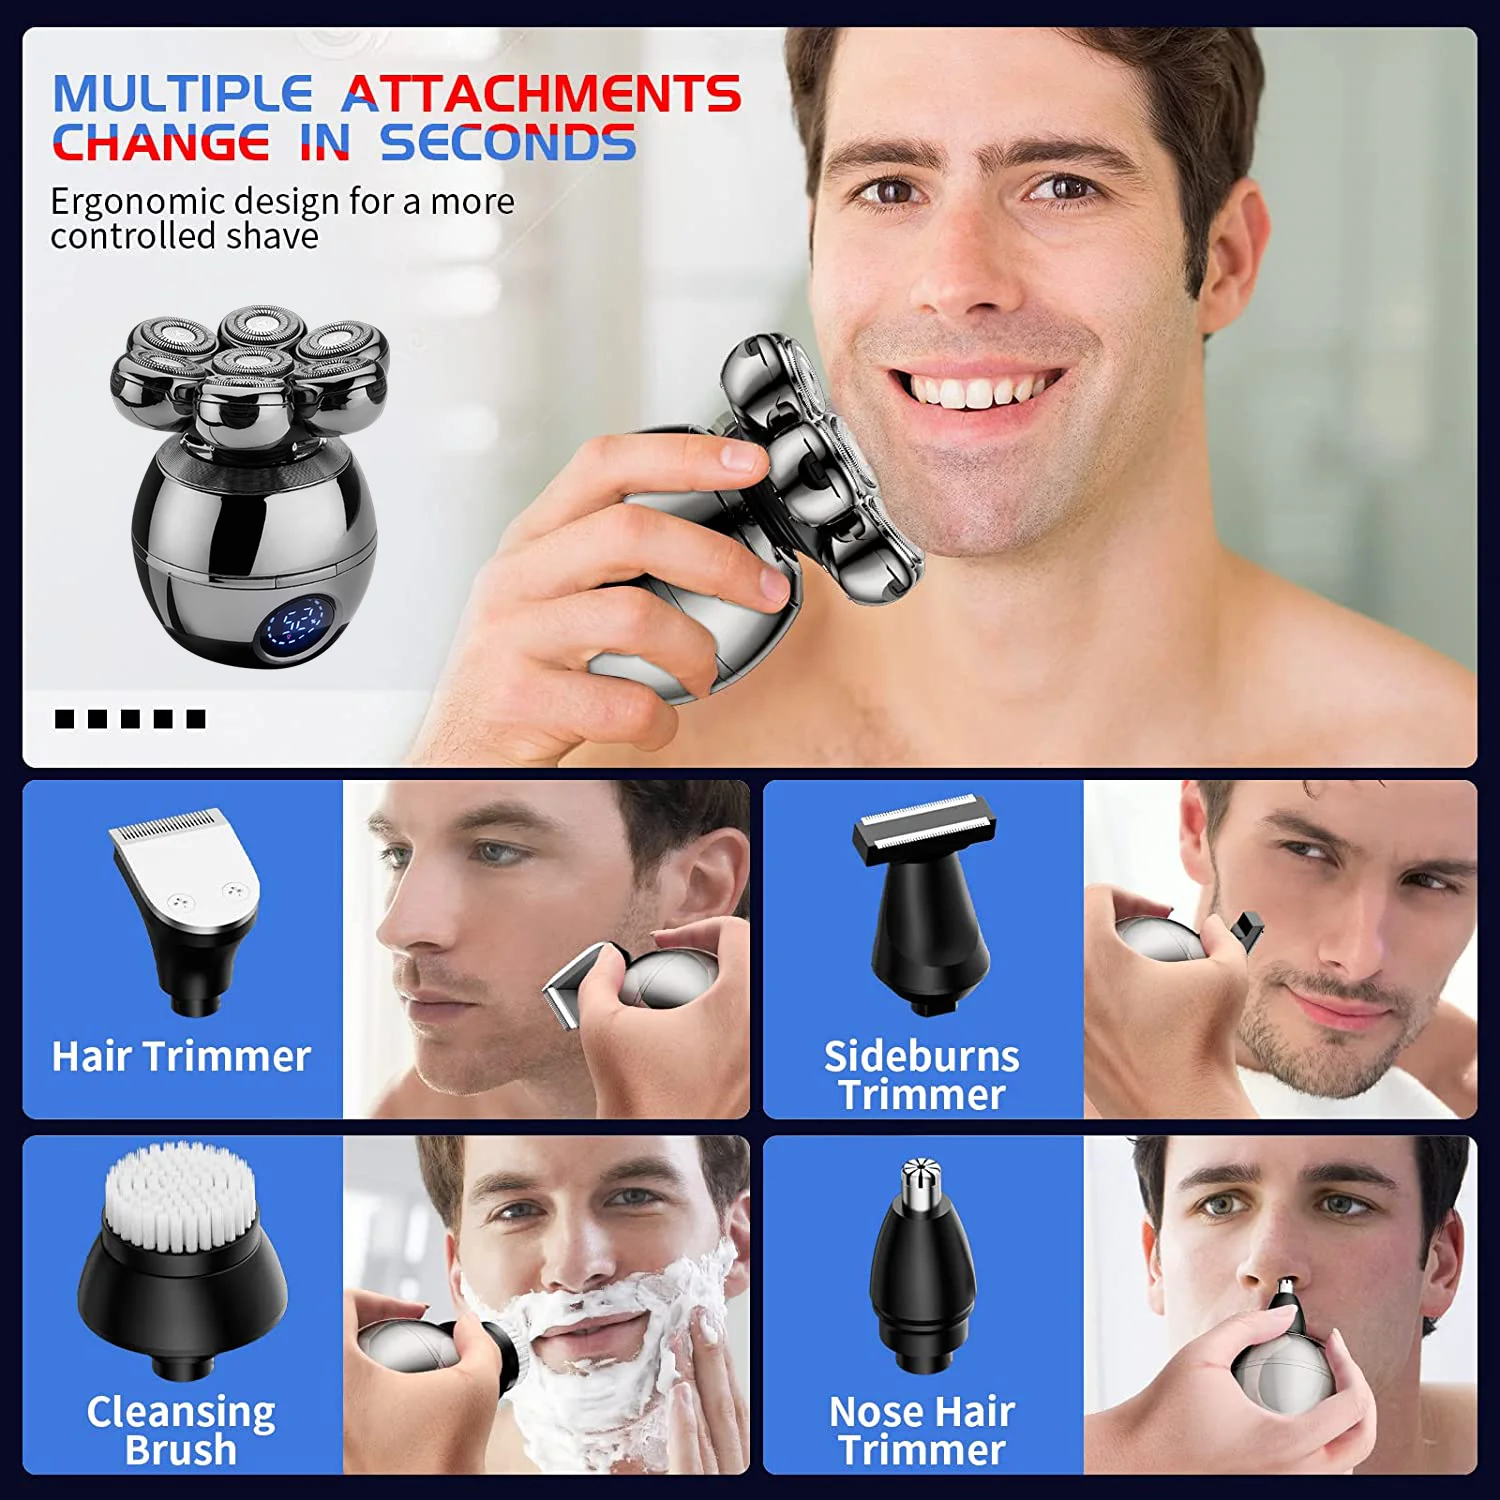 

Maquinilla de afeitar 5 en 1 para hombres, para cabeza calva, recortadora pelo nariz, barba corporal, flotante, Kit herramientas